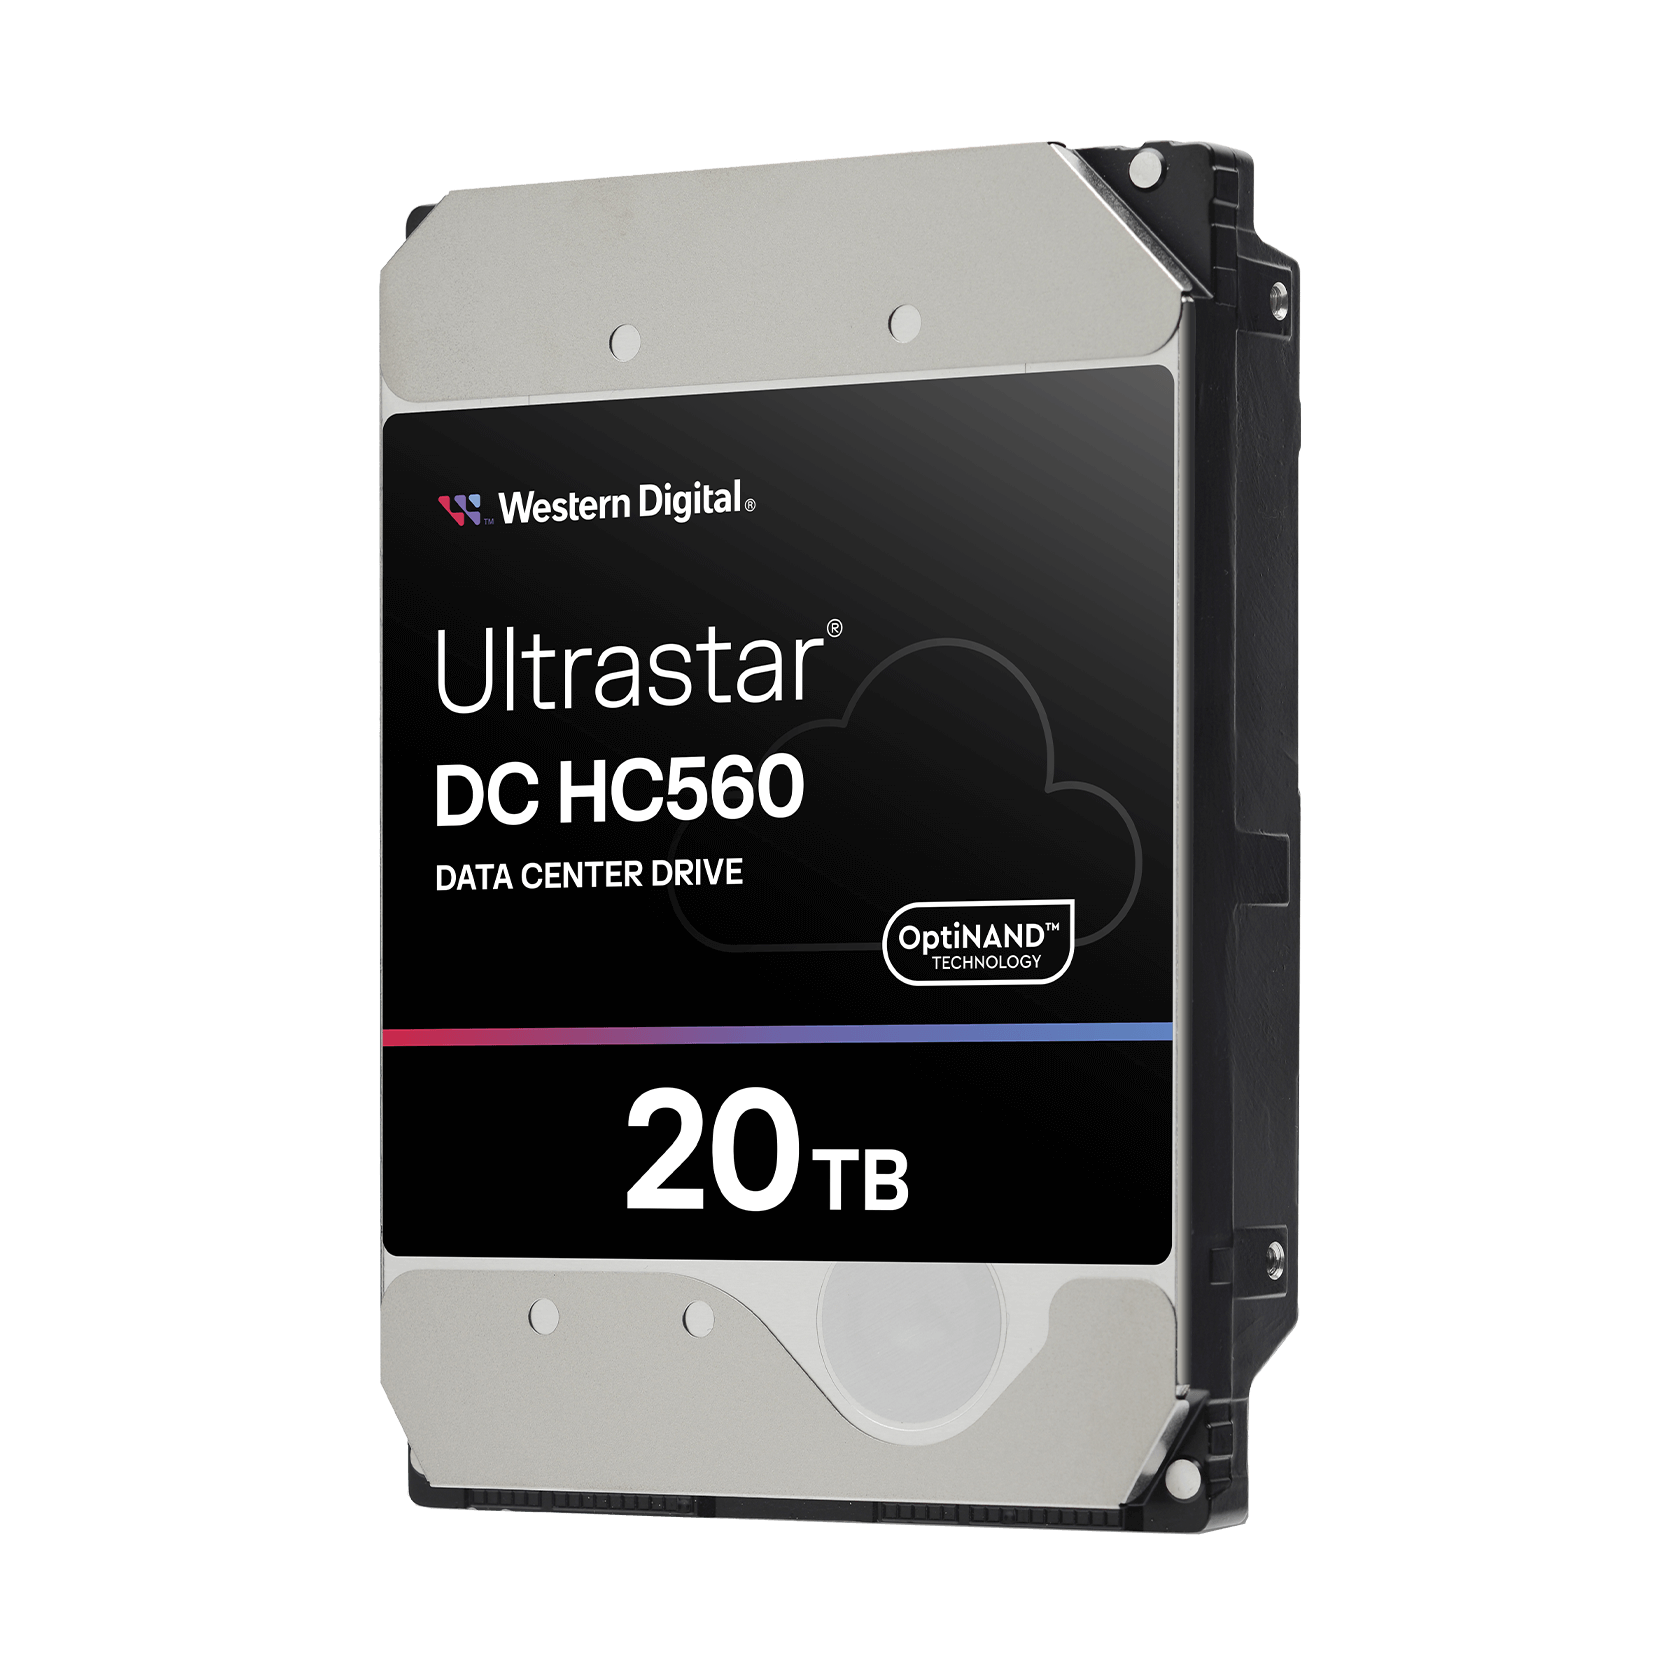 Western Digital 20TB Ultrastar® DC HC560 - 0F38755